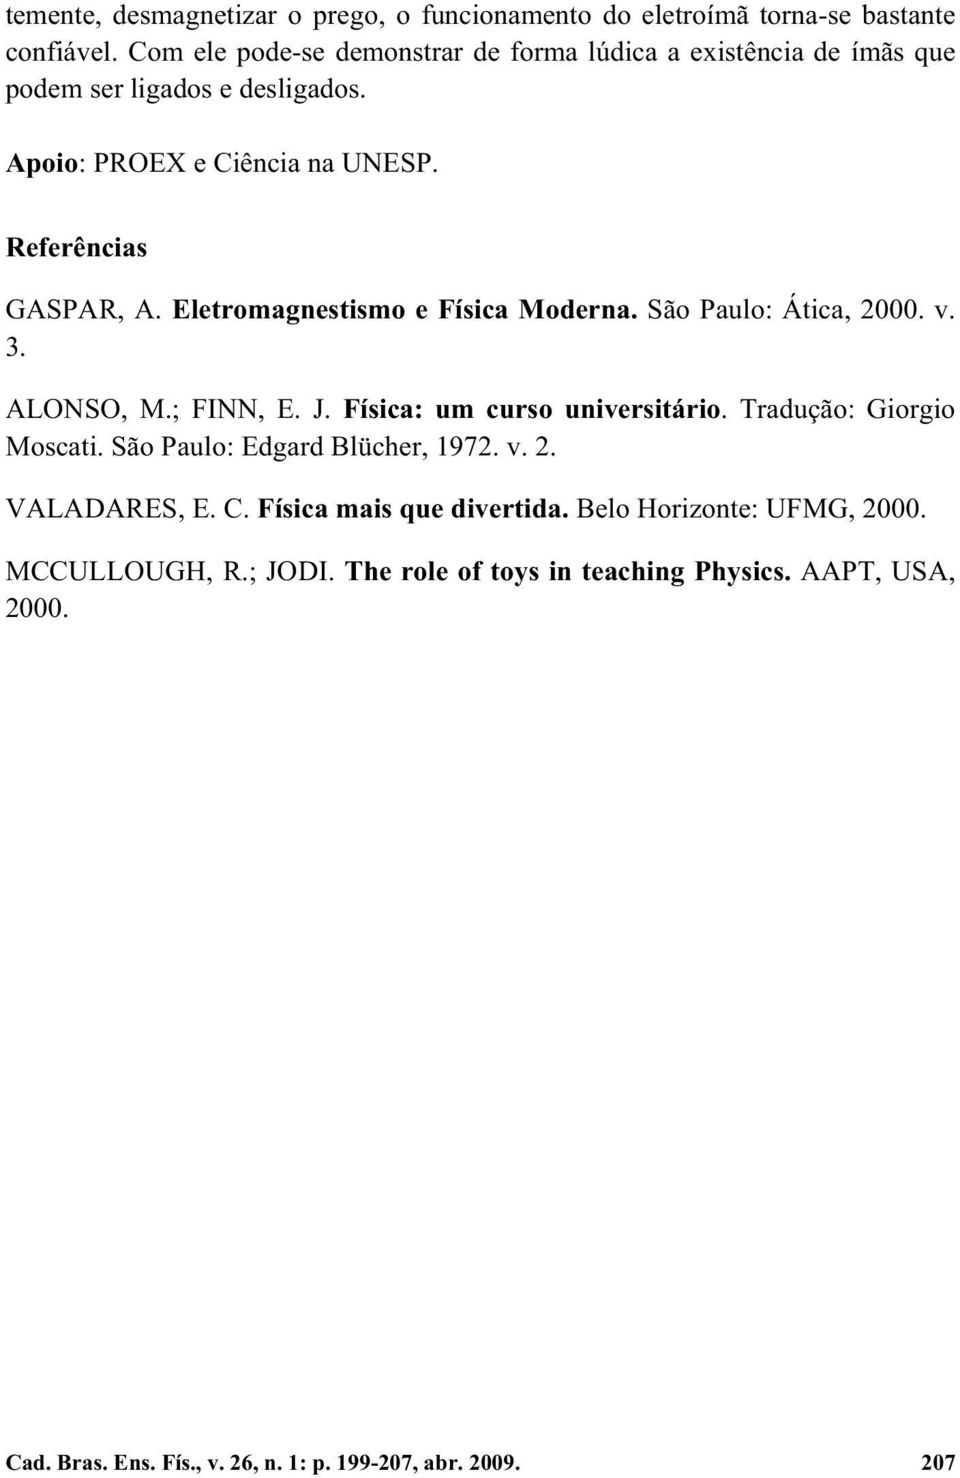 Eletromagnestismo e Física Moderna. São Paulo: Ática, 2000. v. 3. ALONSO, M.; FINN, E. J. Física: um curso universitário. Tradução: Giorgio Moscati.